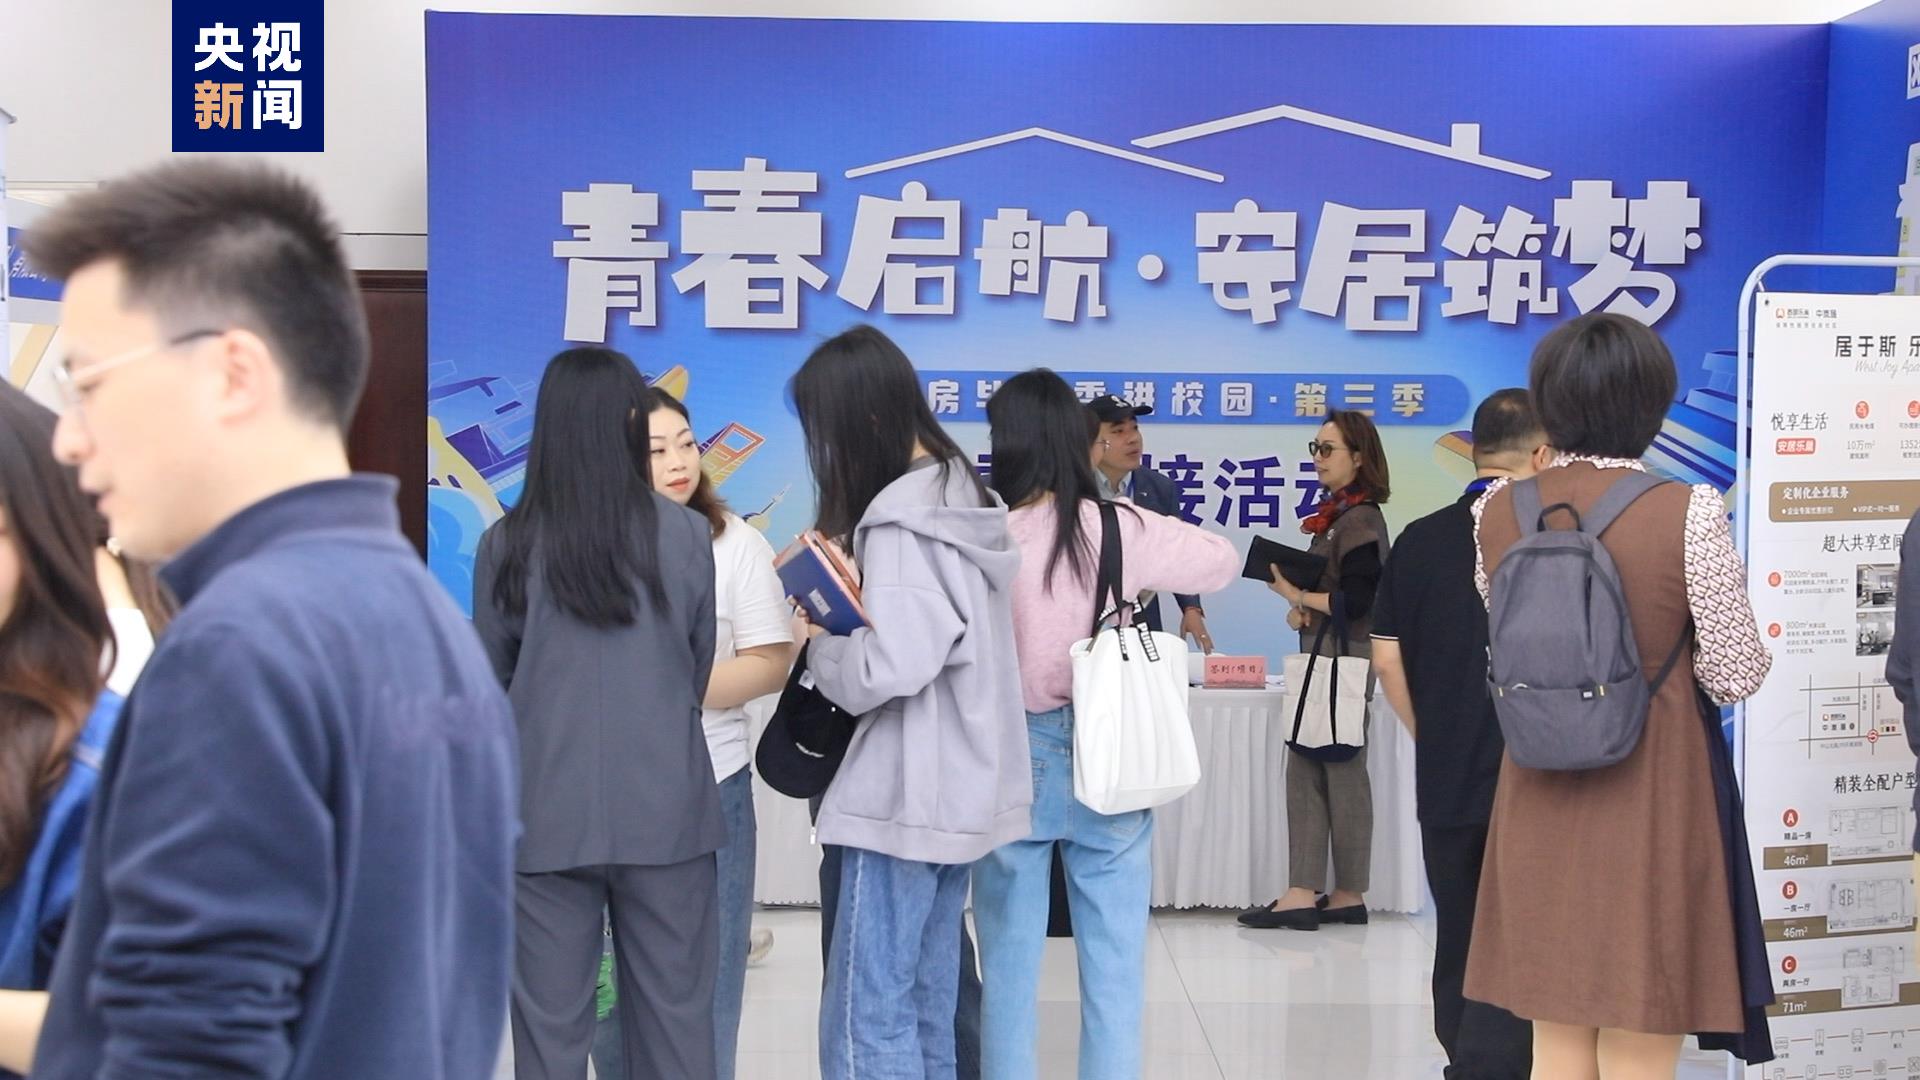 上海电视大学毕业证图片